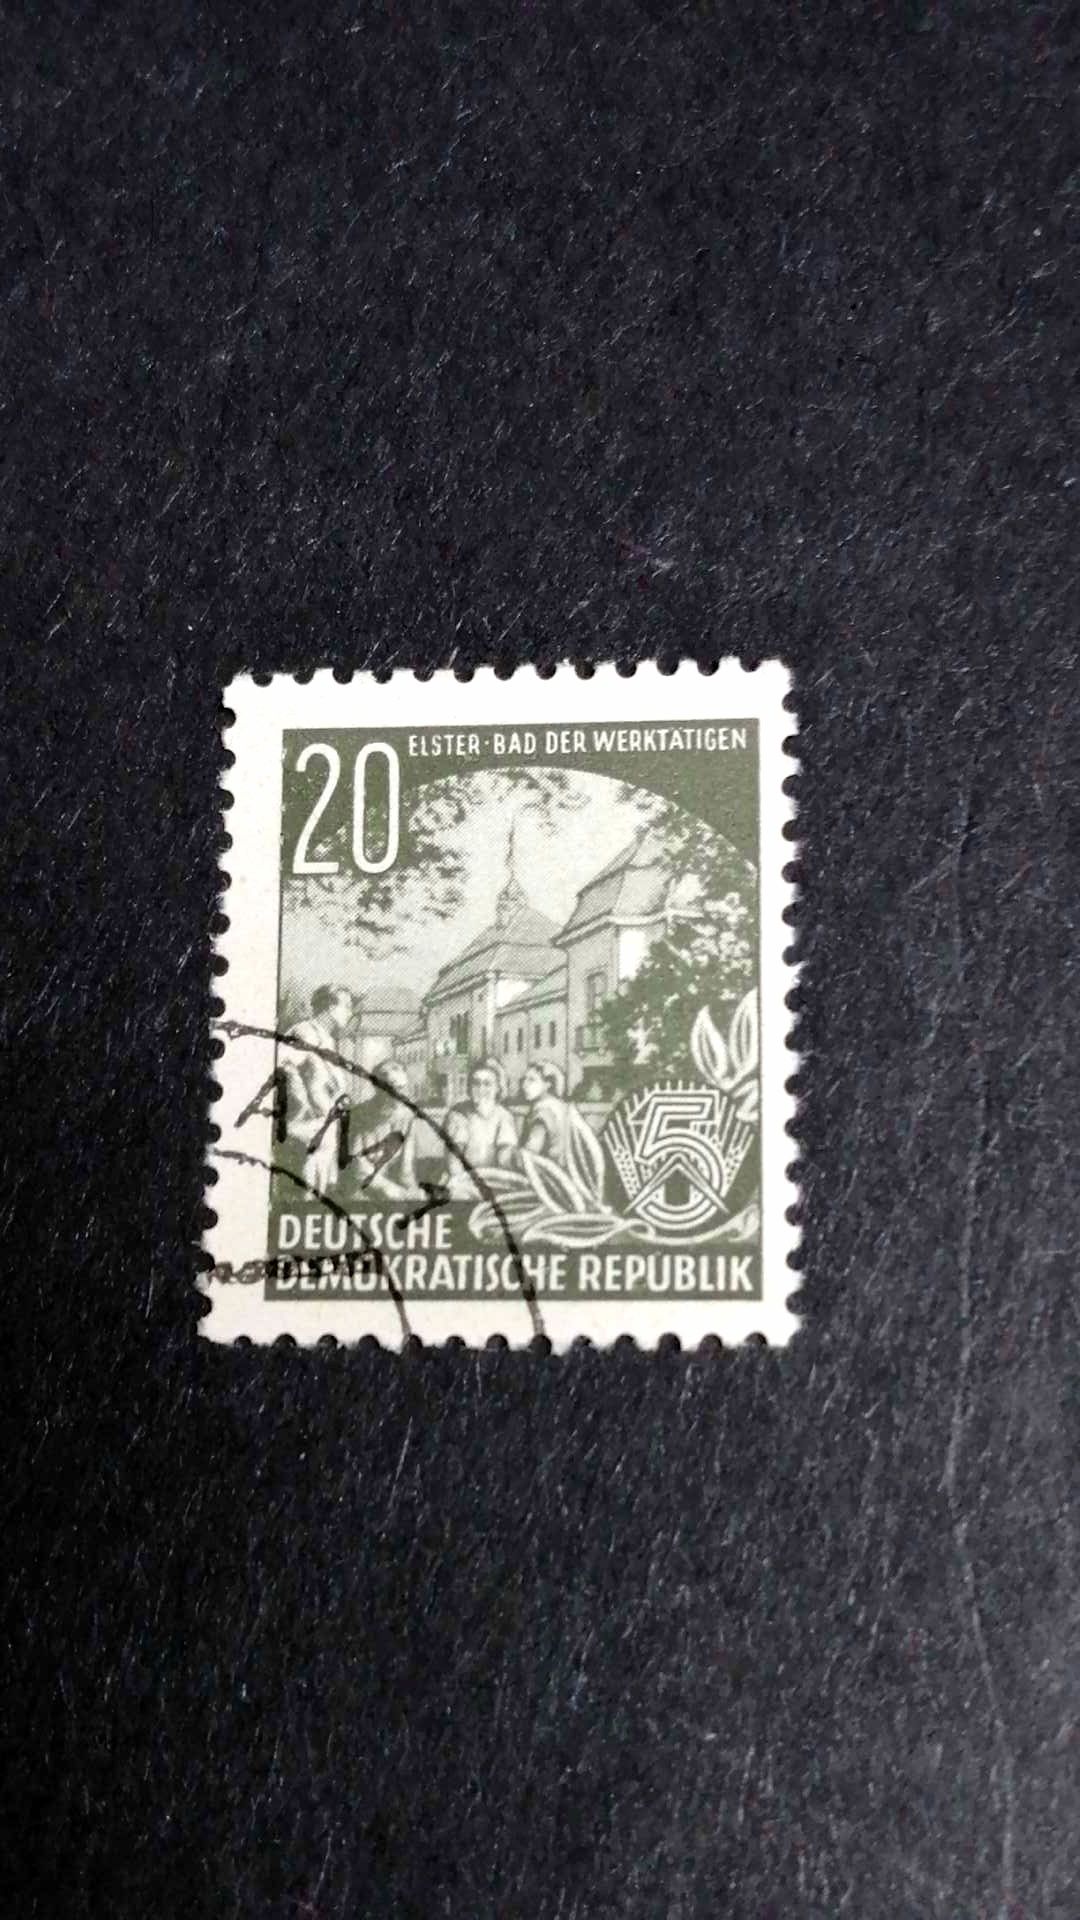 Znaczek pocztowy Niemcy 1956 r DDR cena kat. 400 euro